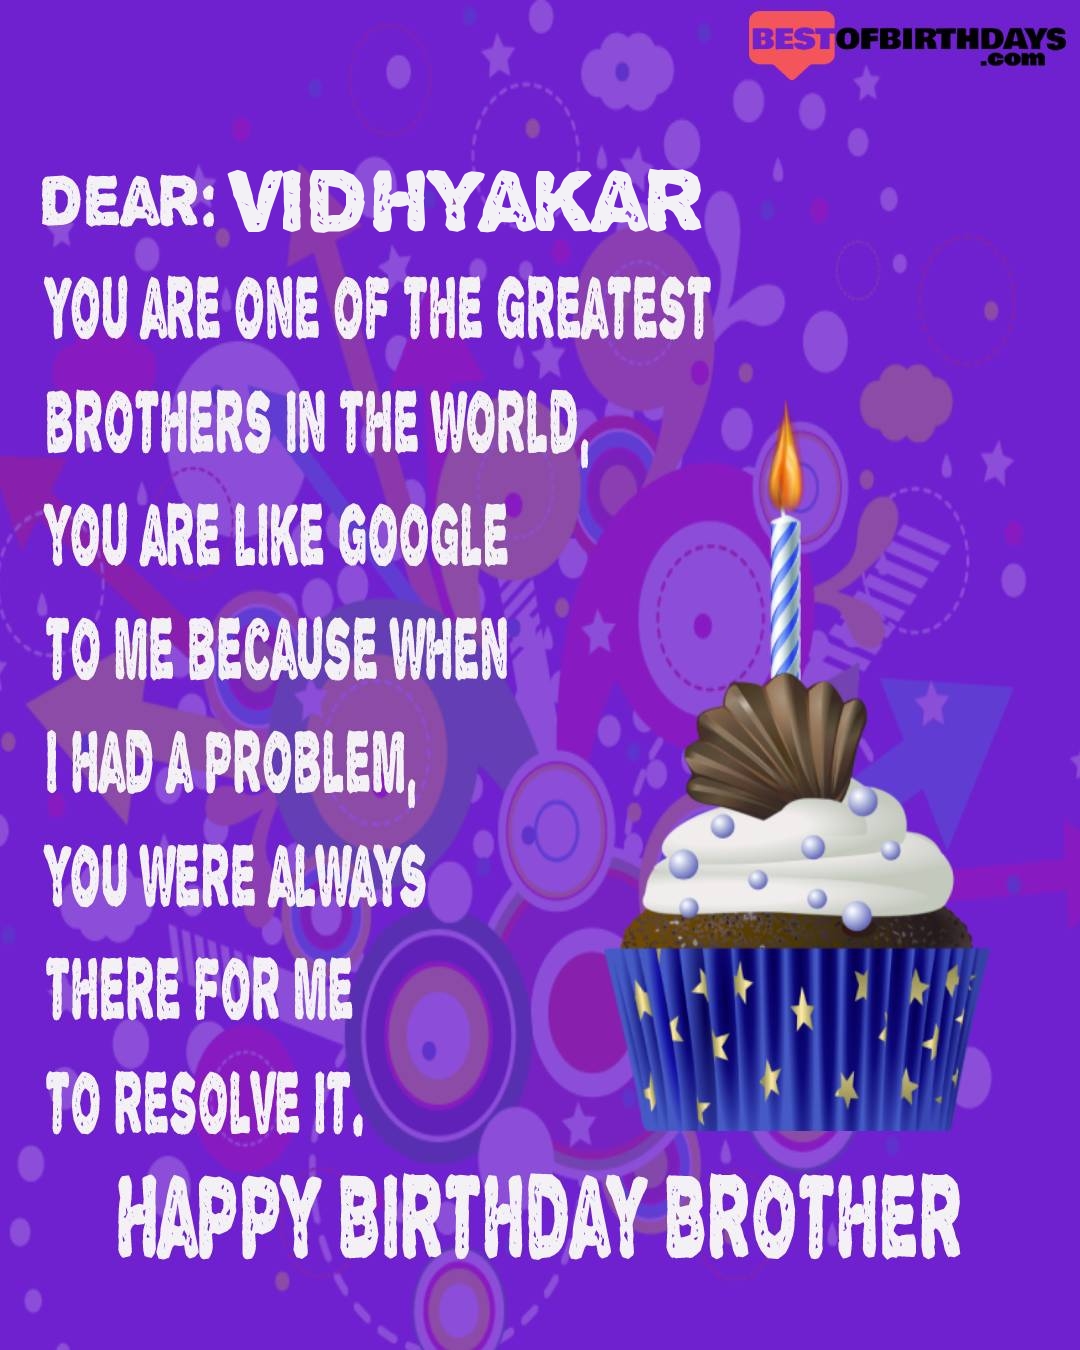 Happy birthday vidhyakar bhai brother bro